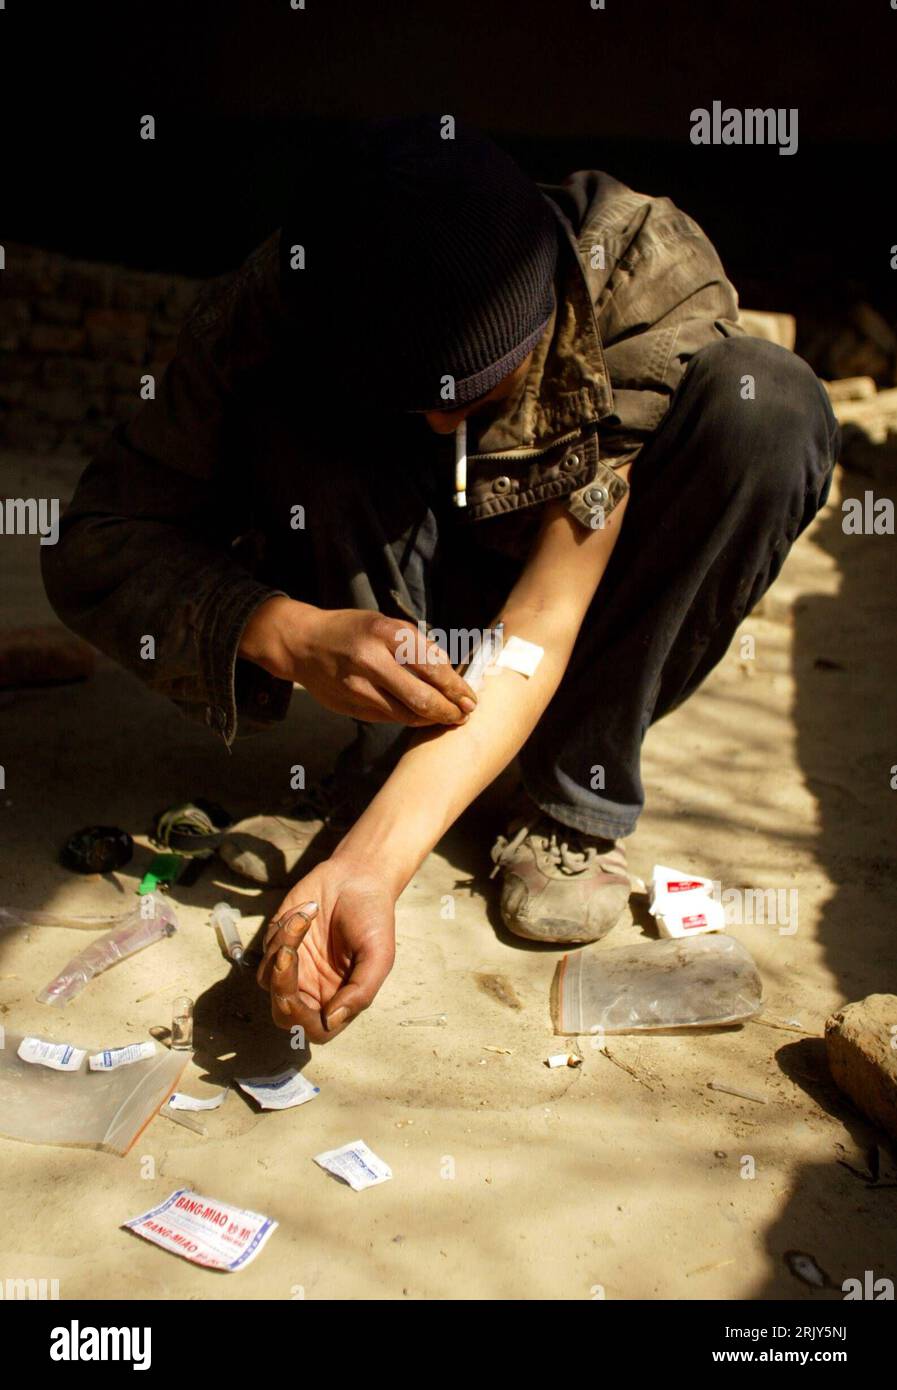 Bildnummer: 52452504  Datum: 10.03.2008  Copyright: imago/Xinhua Drogensüchtiger spritzt sich Heroin in einem verlassenen Gebäude in Kabul - PUBLICATIONxNOTxINxCHN, Personen; 2008, Kabul, Afghanistan , Drogenabhängige, Drogenabhängigkeit, Drogenabhängiger, heroinsüchtig, Suchtverhalten, Heroinsucht, abhängig, Abhängigkeit, Junkie, Armut, Mann, Spritze, spritzen, setzen, Schuss, Fixer; , hoch, Kbdig, Einzelbild,  , Gesellschaft, Asien Stock Photo